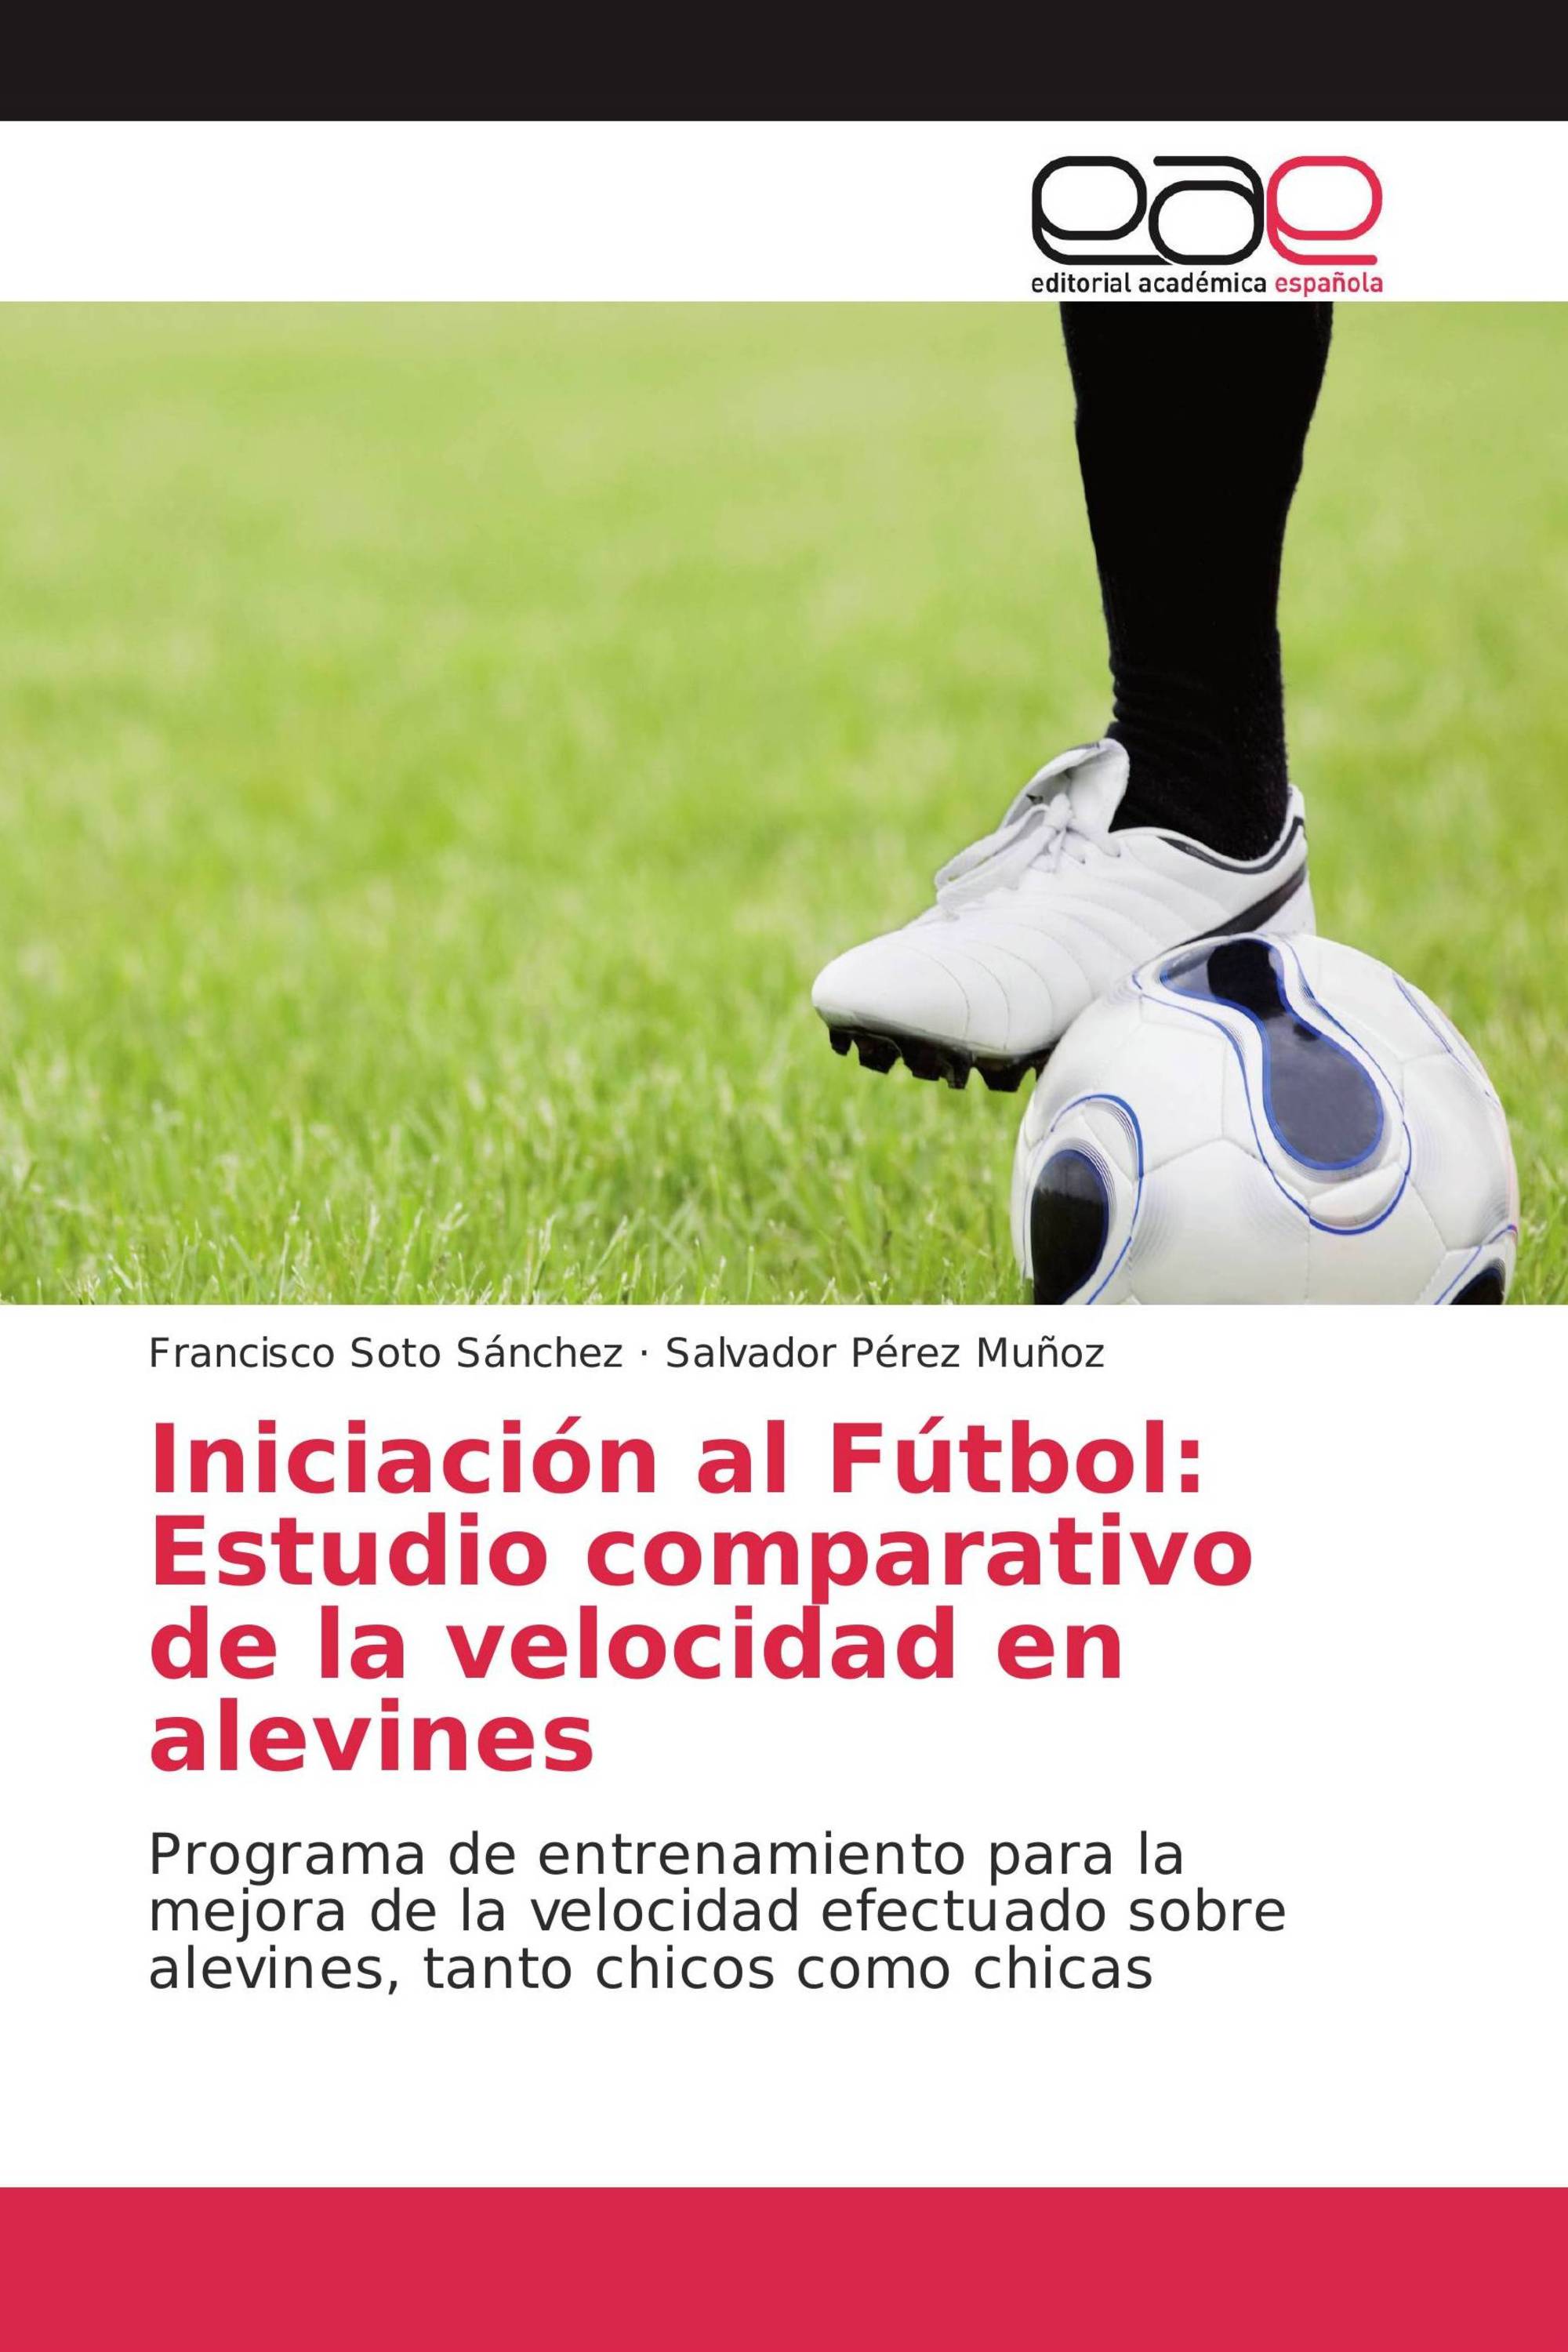 Imagen de portada del libro Iniciación al Fútbol